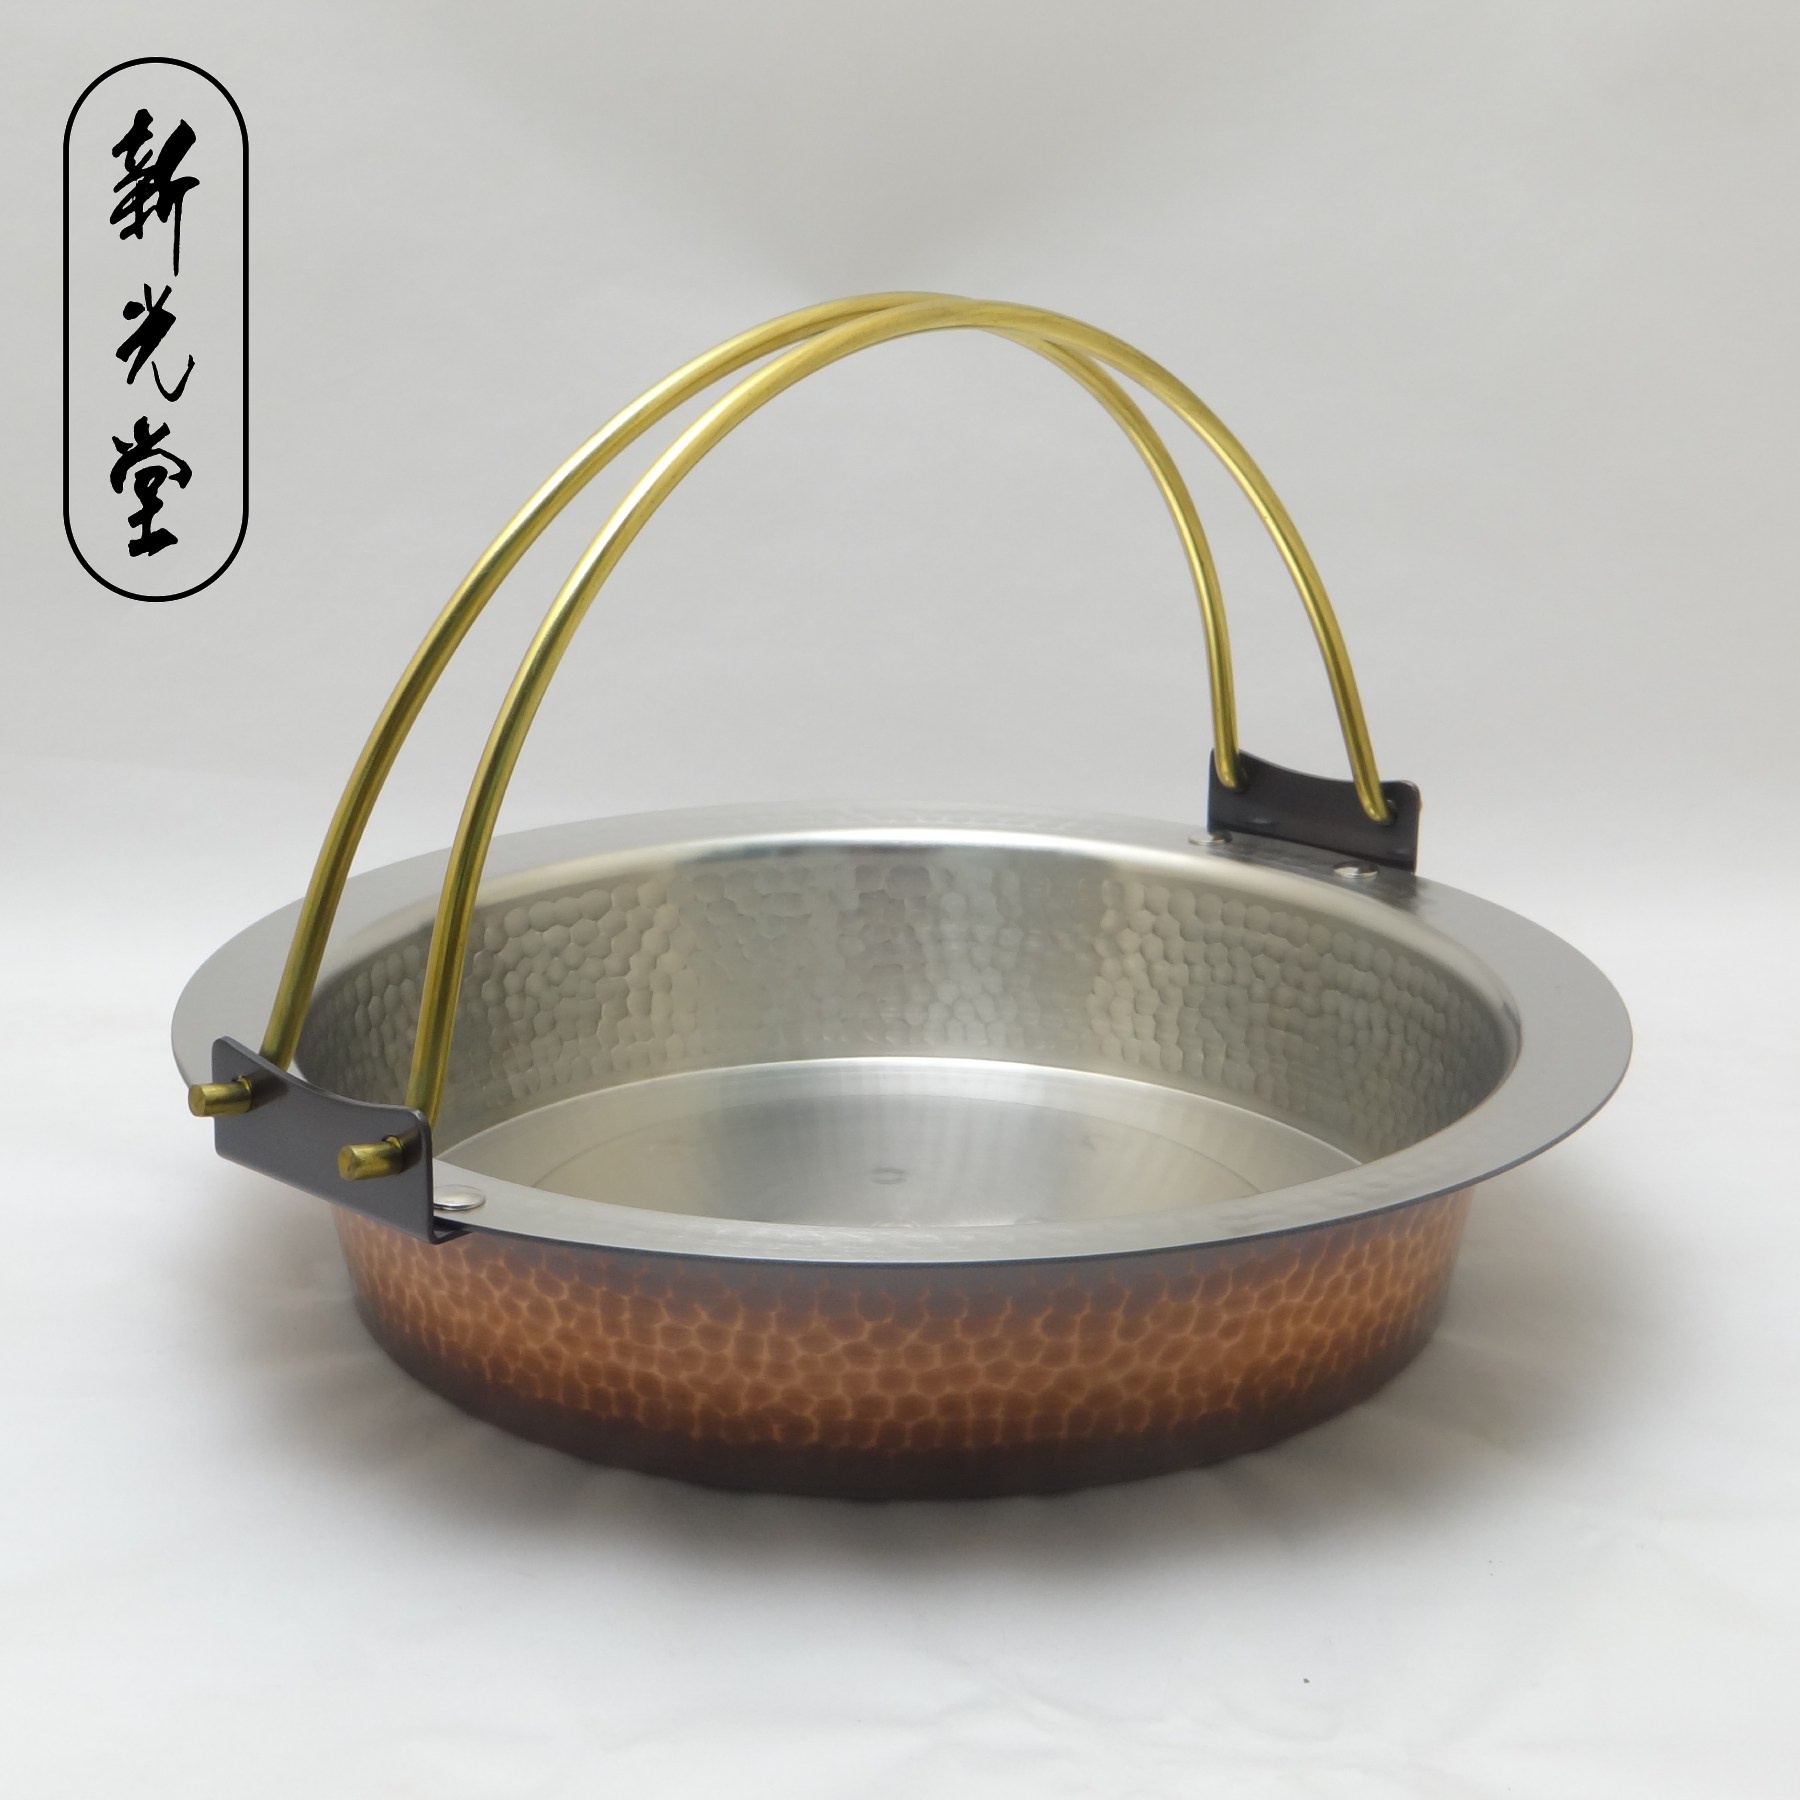 新光金属 天ぷら鍋 素銅 21cm IH対応 ミニ卓上天ぷら鍋 FS-104IH - 2